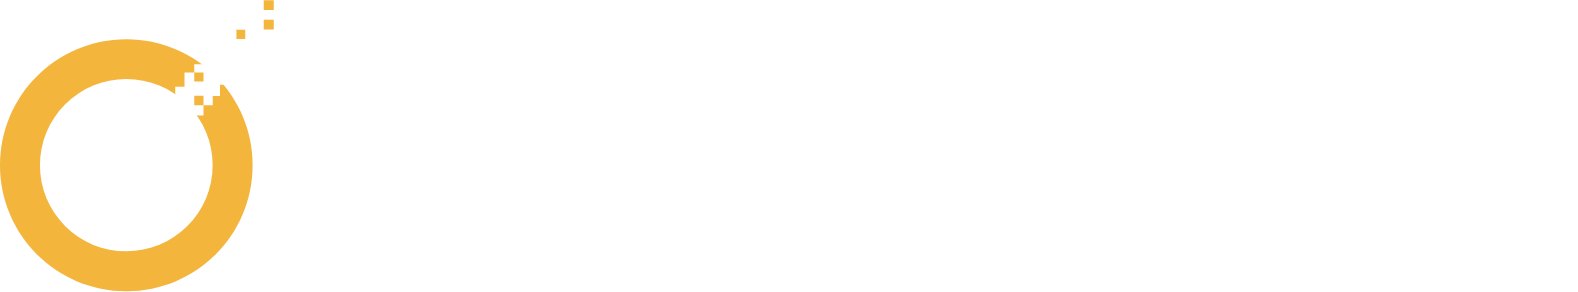 NortonLifeLock
 logo large for dark backgrounds (transparent PNG)